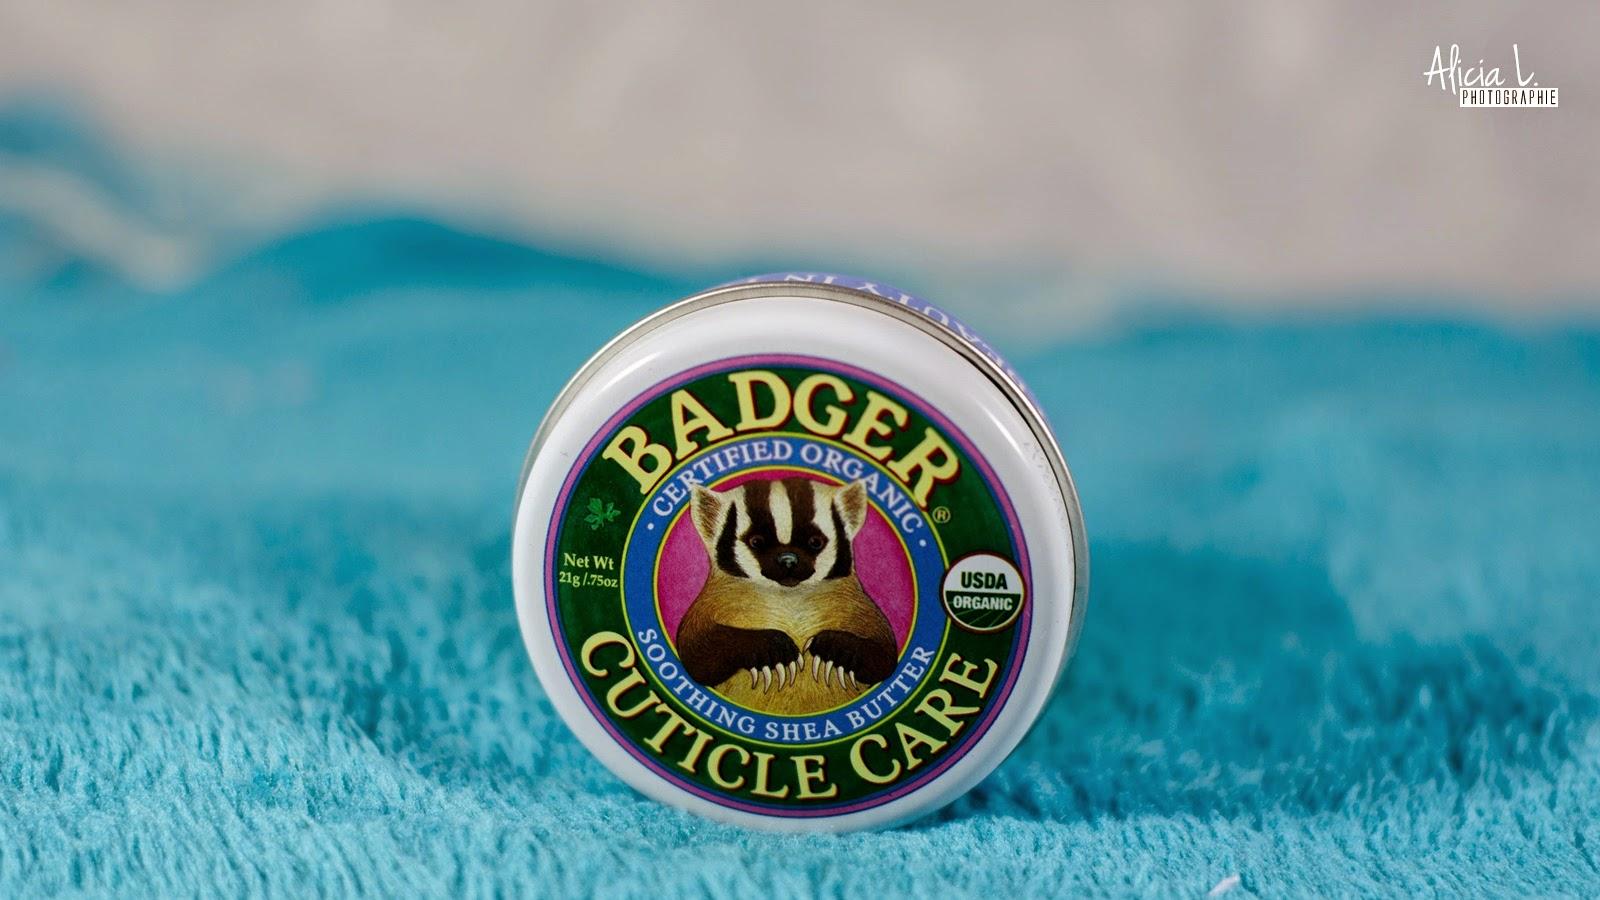 Cuticle Care de Badger Balm